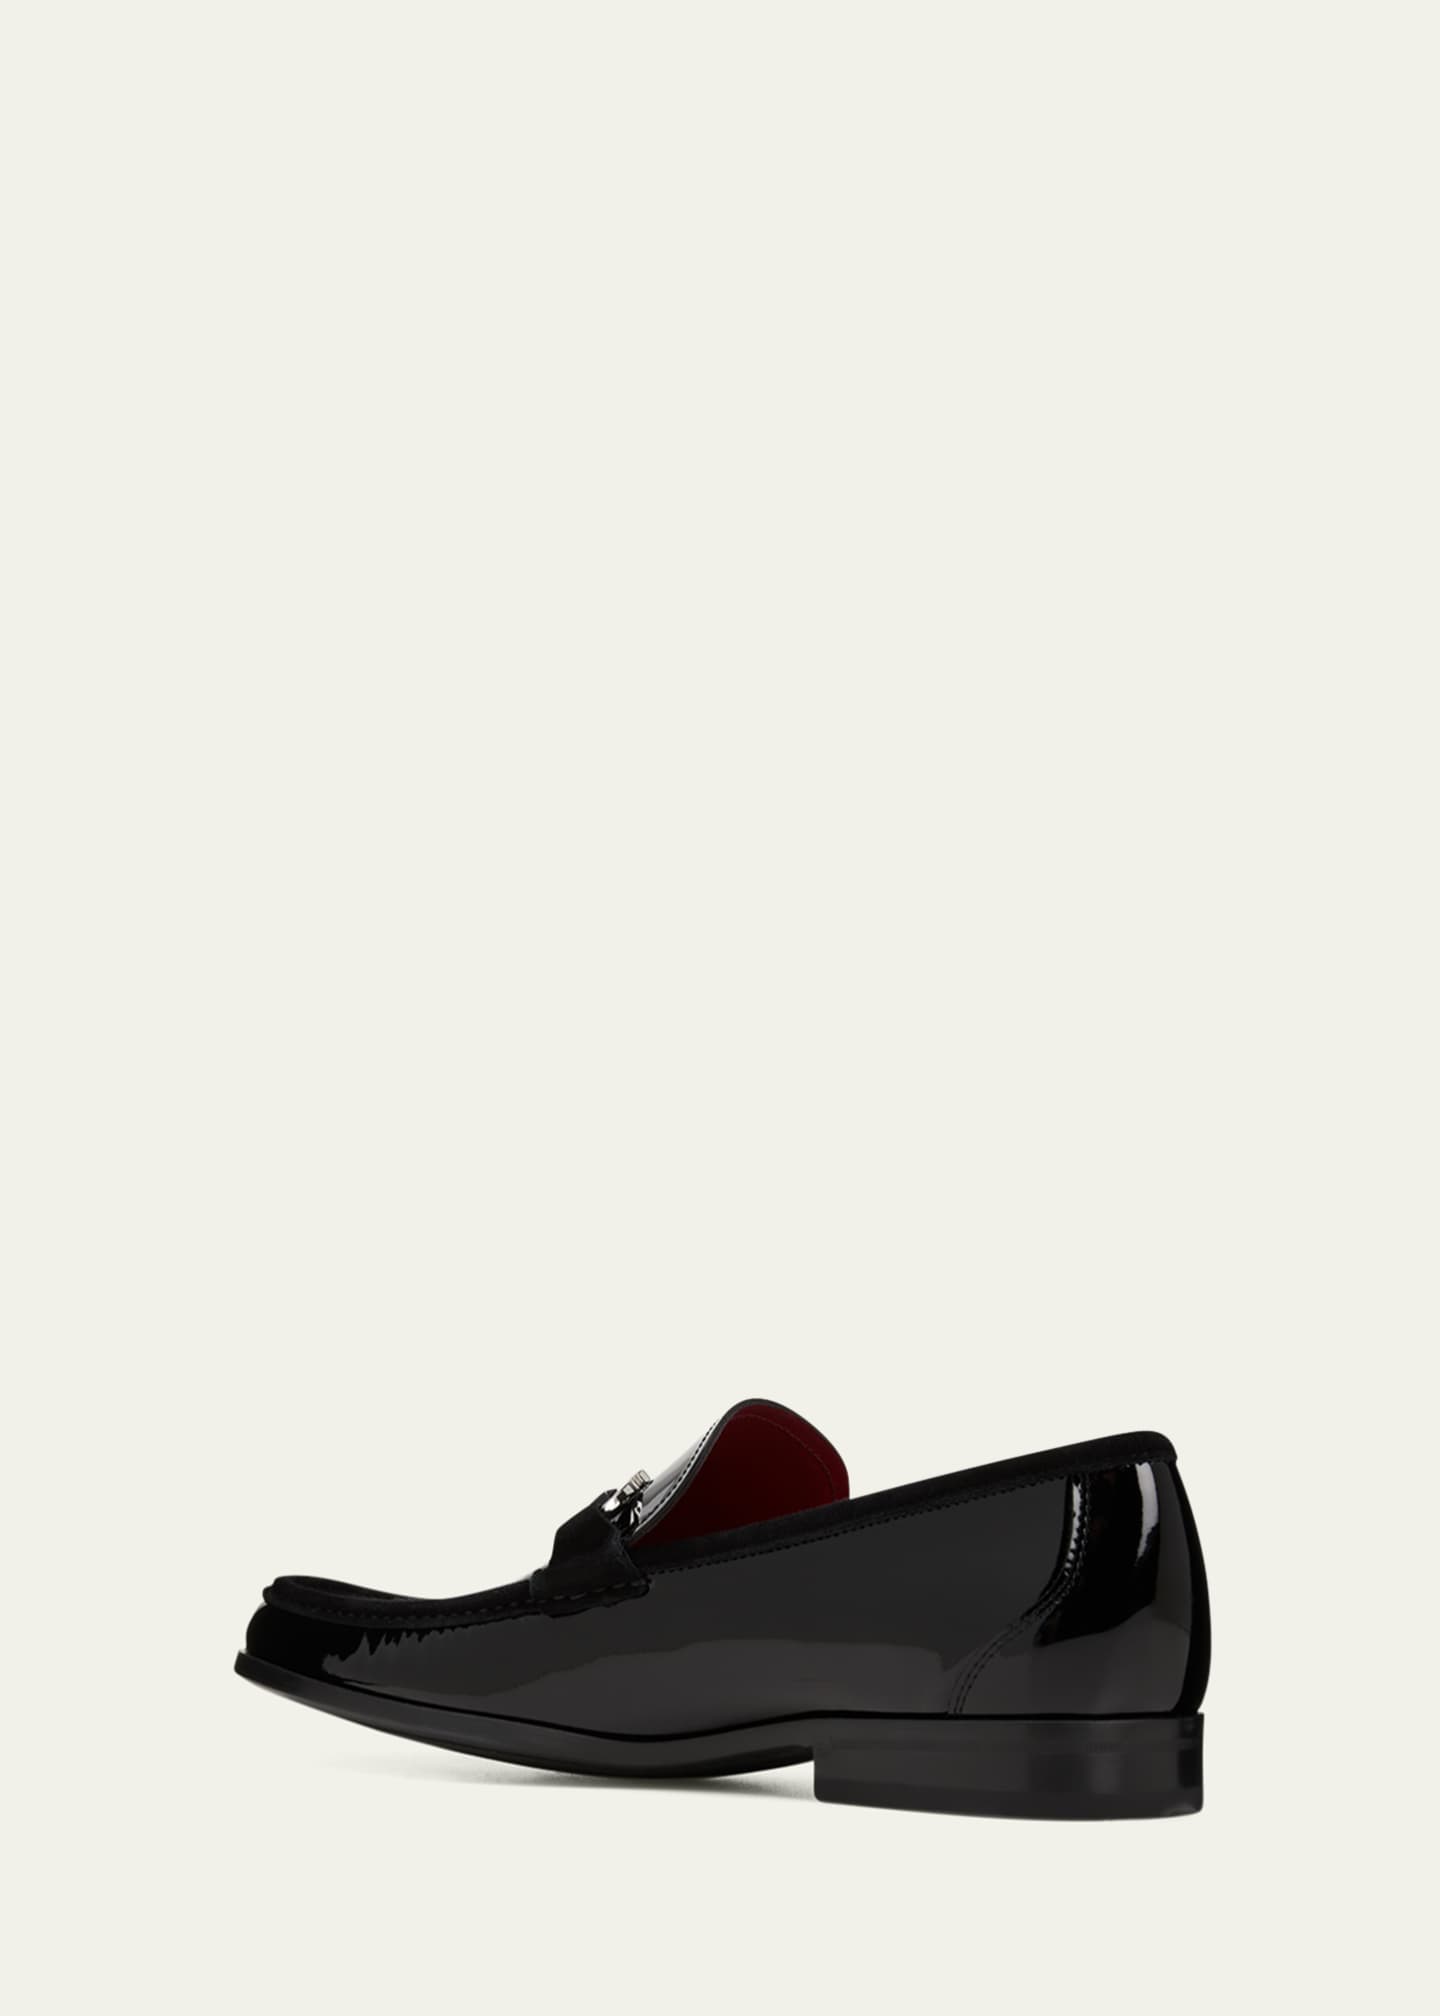 Salvatore Ferragamo Men's Grandioso-2 Patent Leather Gancini Loafers